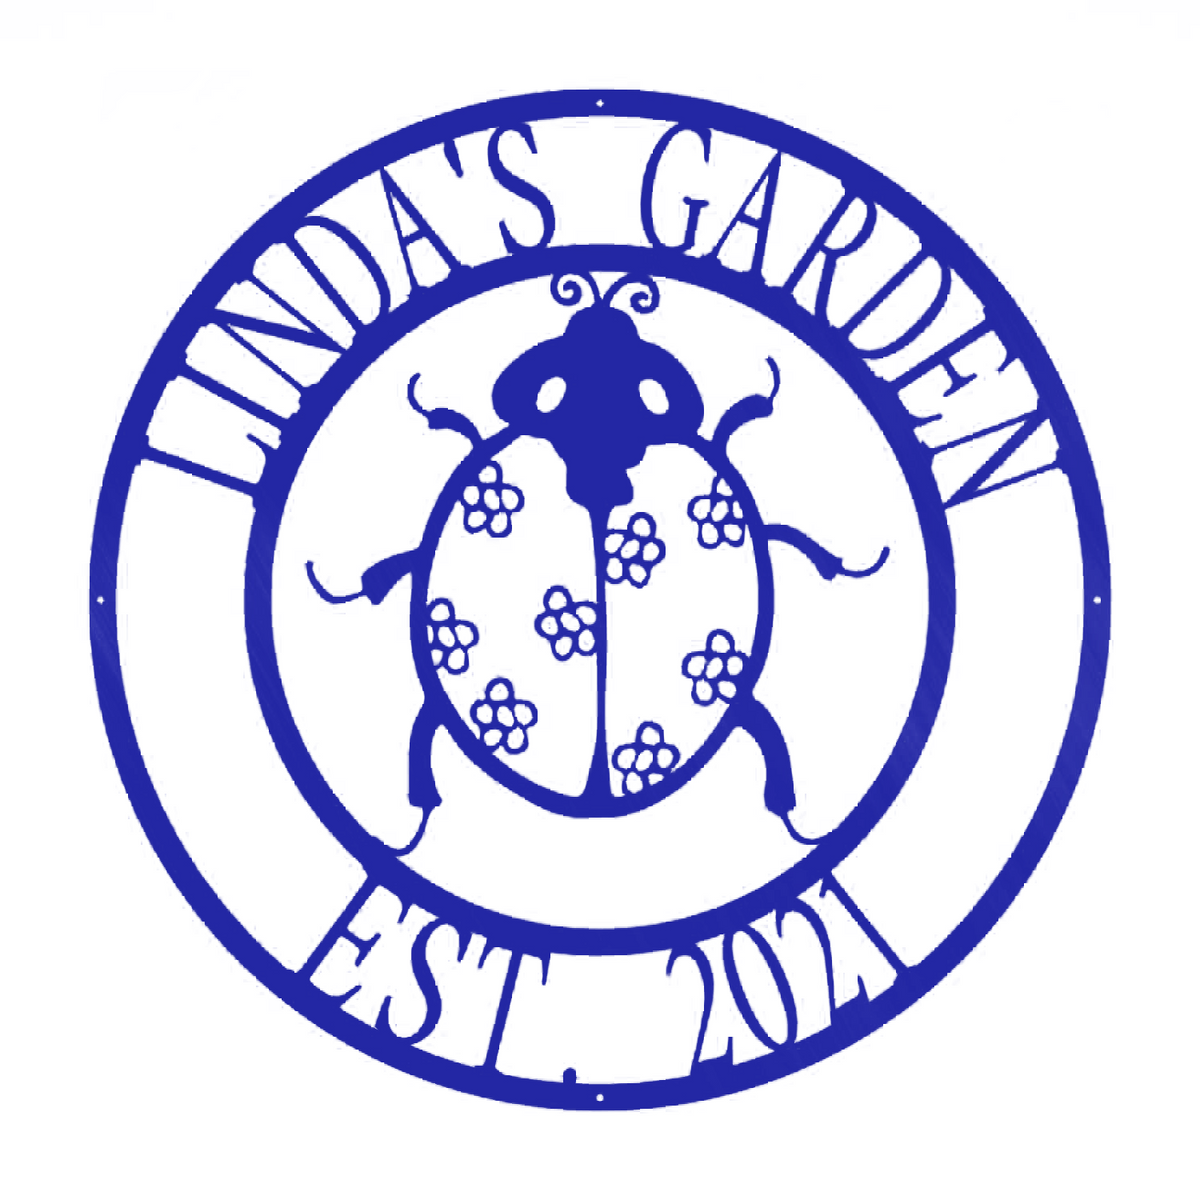 Ladybug Farm Garden Art Monogram